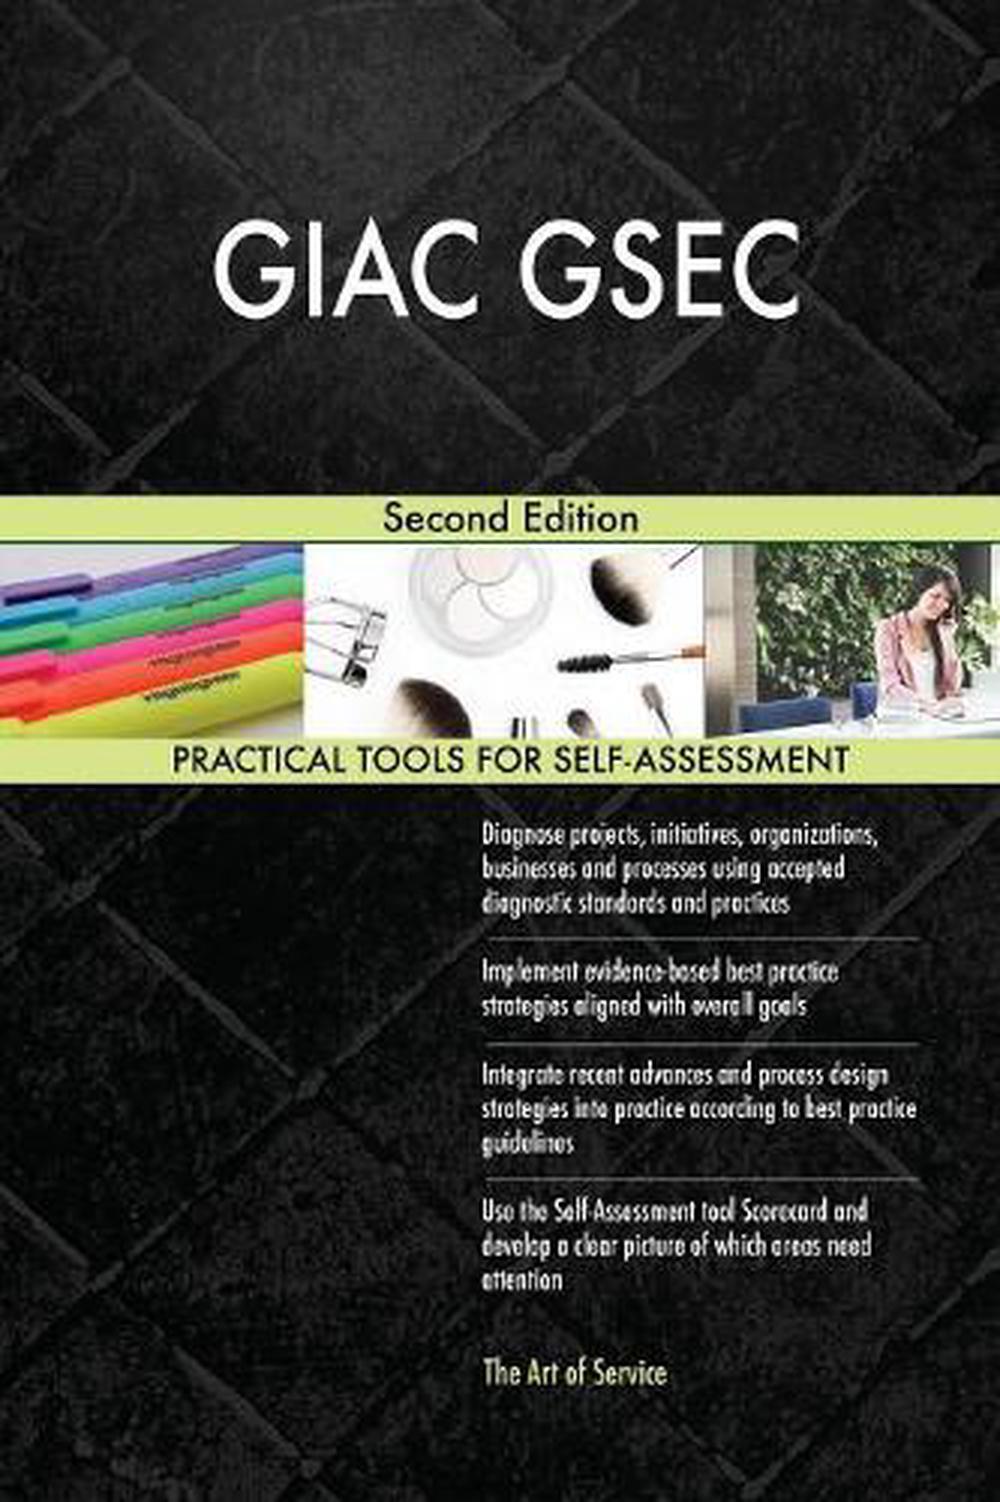 GSEC Demotesten